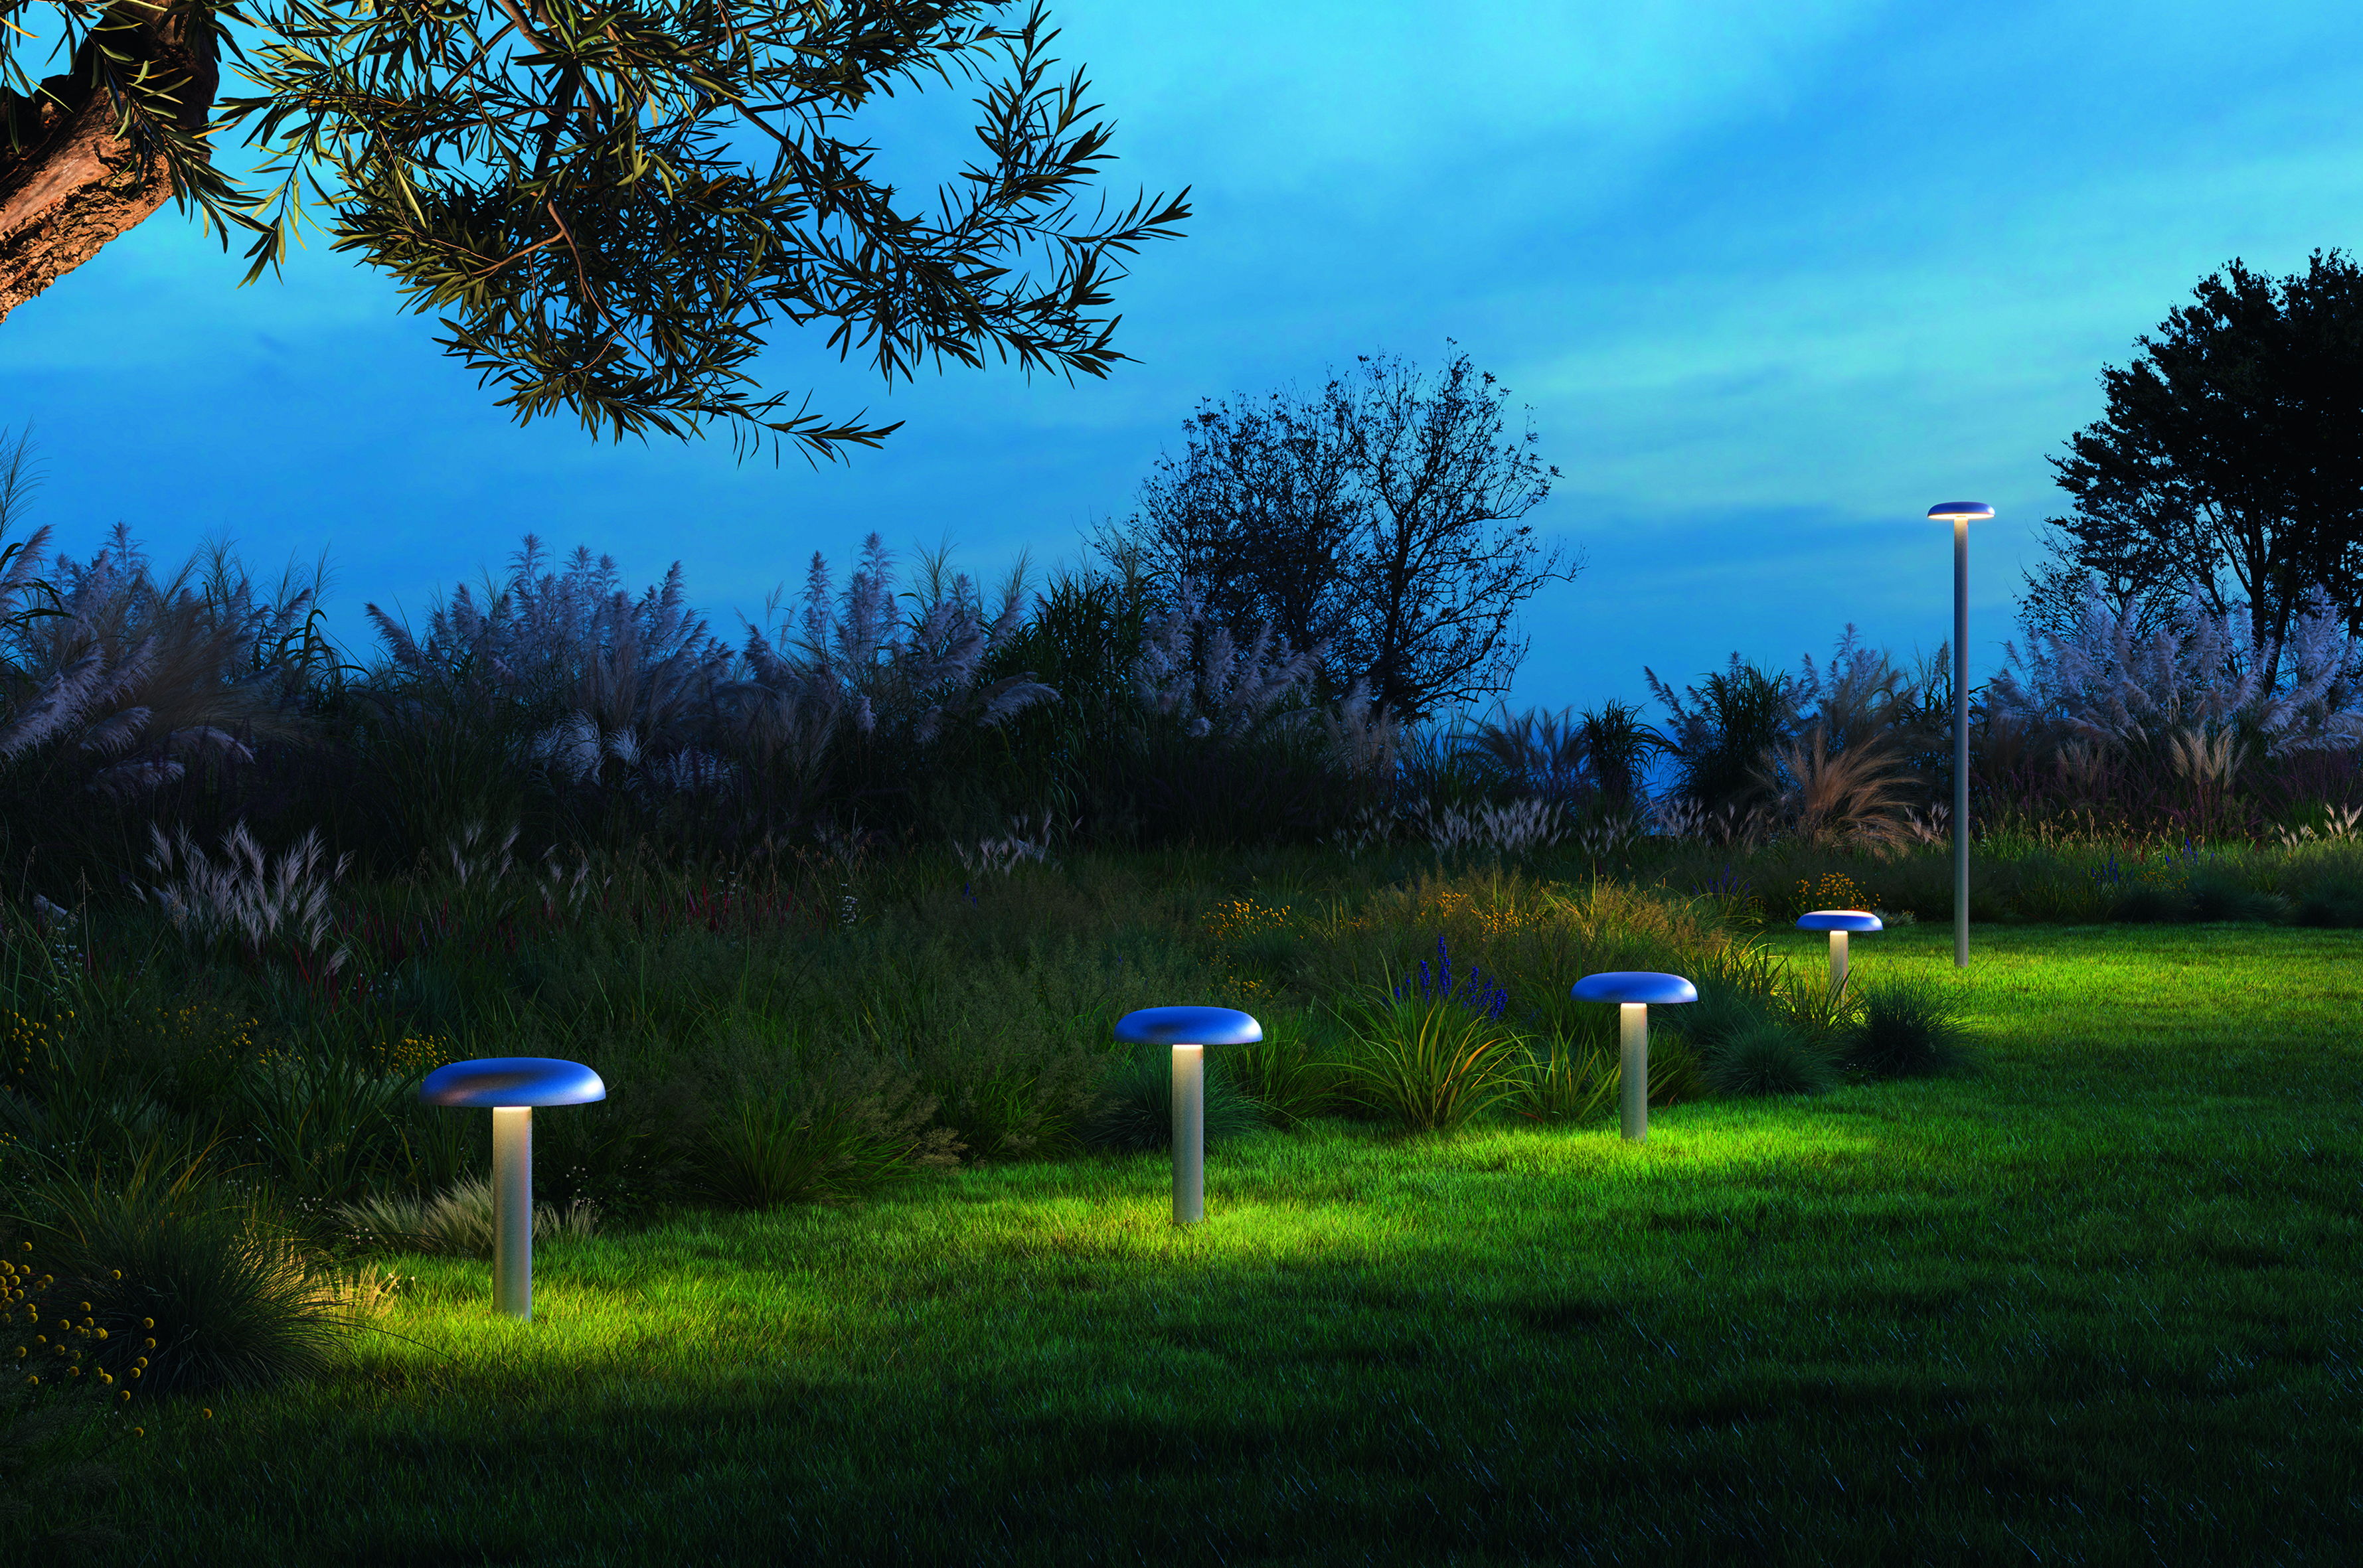 Knop outdoor collection designed by BIG - Bjarke Ingels Group for Artemide